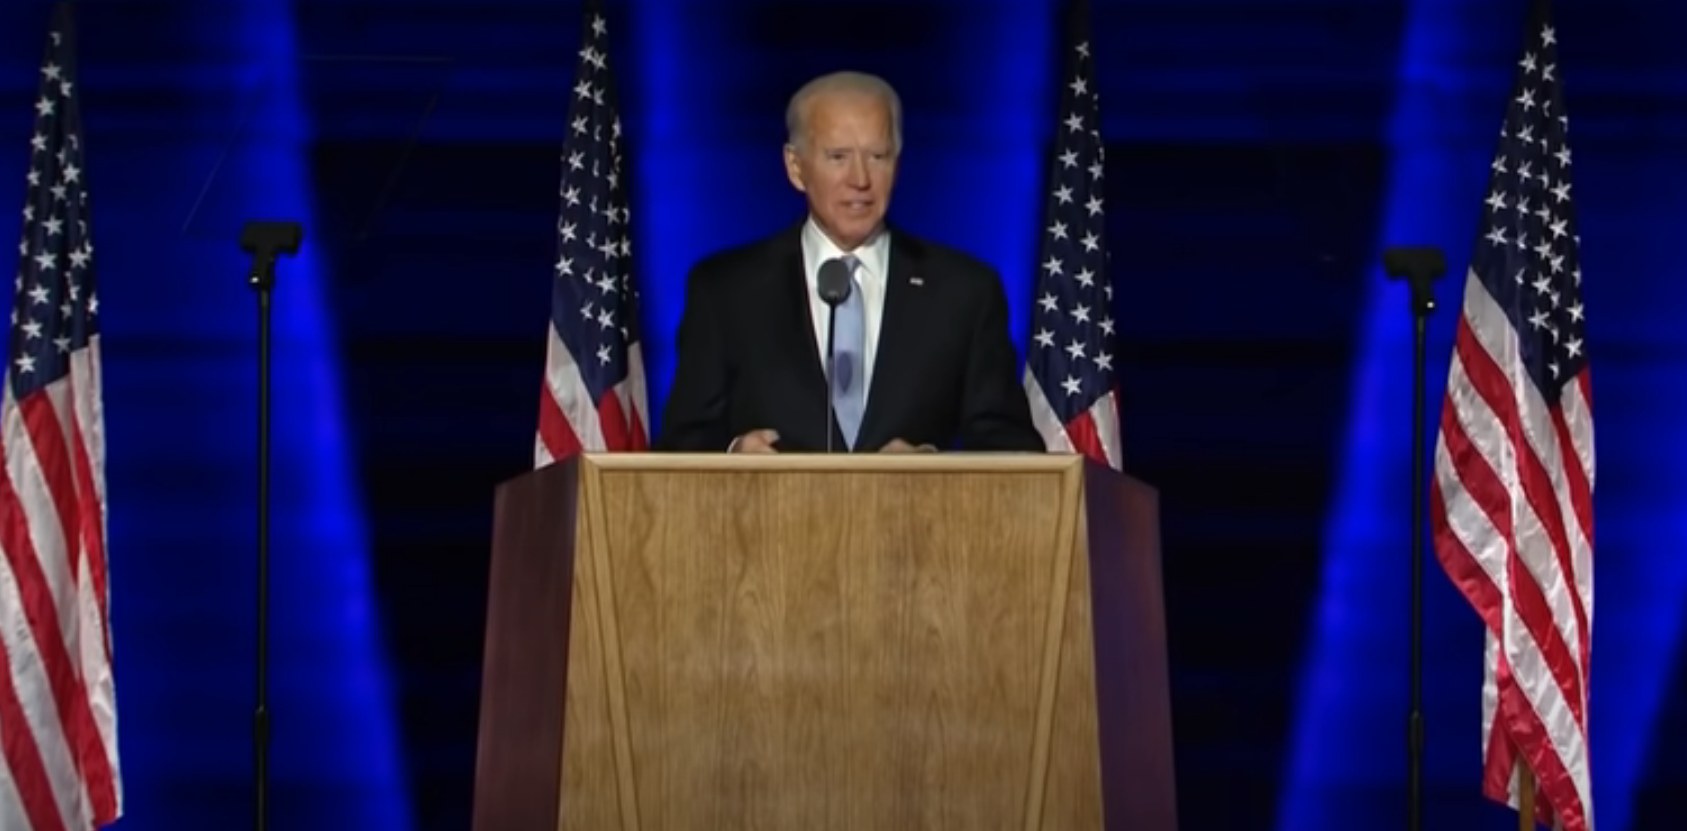 Joe Biden's acceptance speech